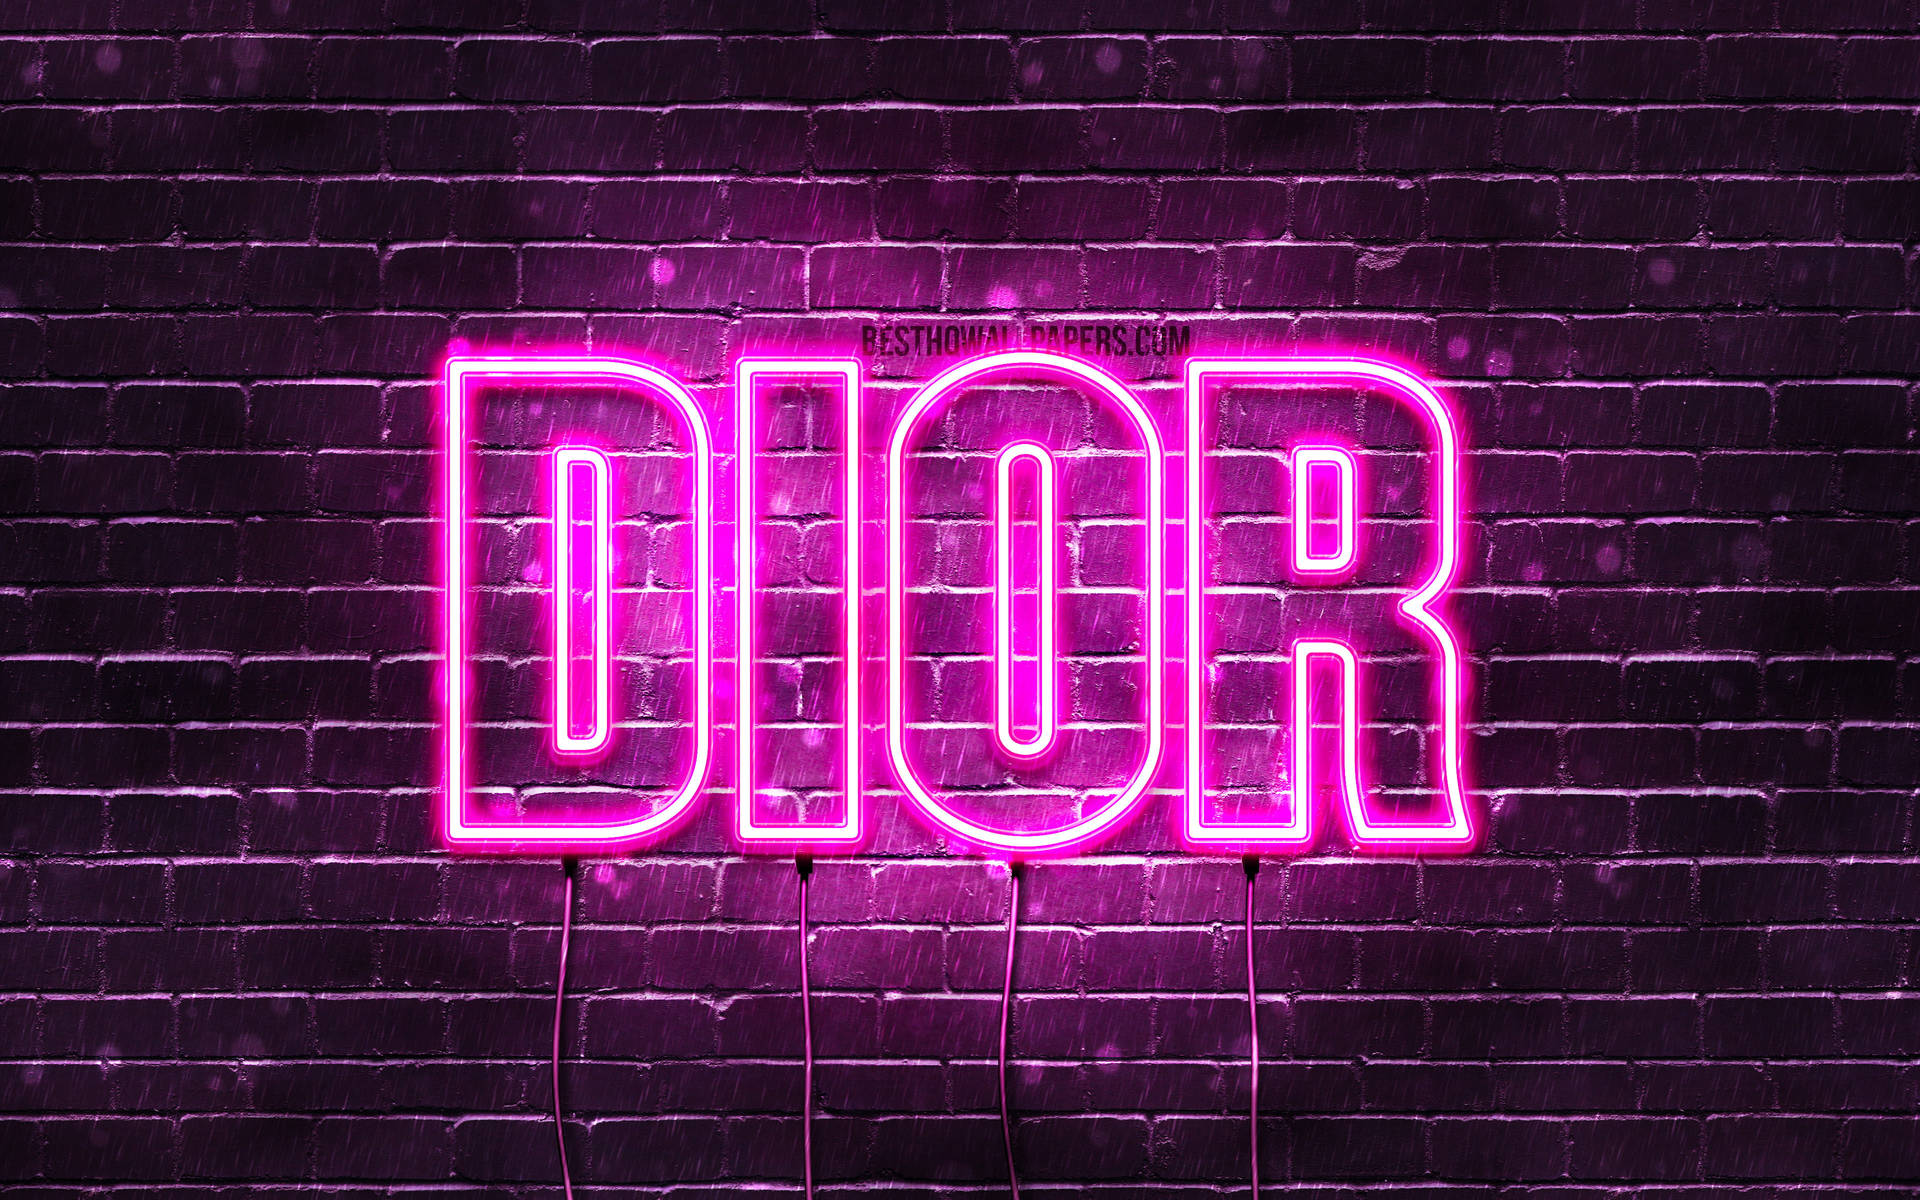 1) Hãy cùng ngắm nhìn hình ảnh nền chủ đề Dior với tông màu hồng tinh tế, mang lại sự ấm áp, nhẹ nhàng và nữ tính cho mọi không gian. Bố cục tinh tế và phối màu hài hòa được đầu tư tỉ mỉ sẽ khiến bạn không thể rời mắt được. 2) Bạn yêu thích sự thanh lịch và lãng mạn? Chiêm ngưỡng thiết kế hình nền Dior tông màu hồng nhạt đồng điệu với đường nét đơn giản, tạo nên không gian tràn đầy cảm xúc ngọt ngào, lãng mạn trong mỗi khung hình. 3) Khi dừng lại và ngắm nhìn những chi tiết tinh tế của hình nền Dior hồng đậm, bạn sẽ cảm nhận được sự sang trọng, quý phái đến từng chi tiết. Sự hòa quyện giữa màu hồng phấn và logo thương hiệu sẽ khiến mọi người bị thu hút và muốn thưởng thức từng khung hình.